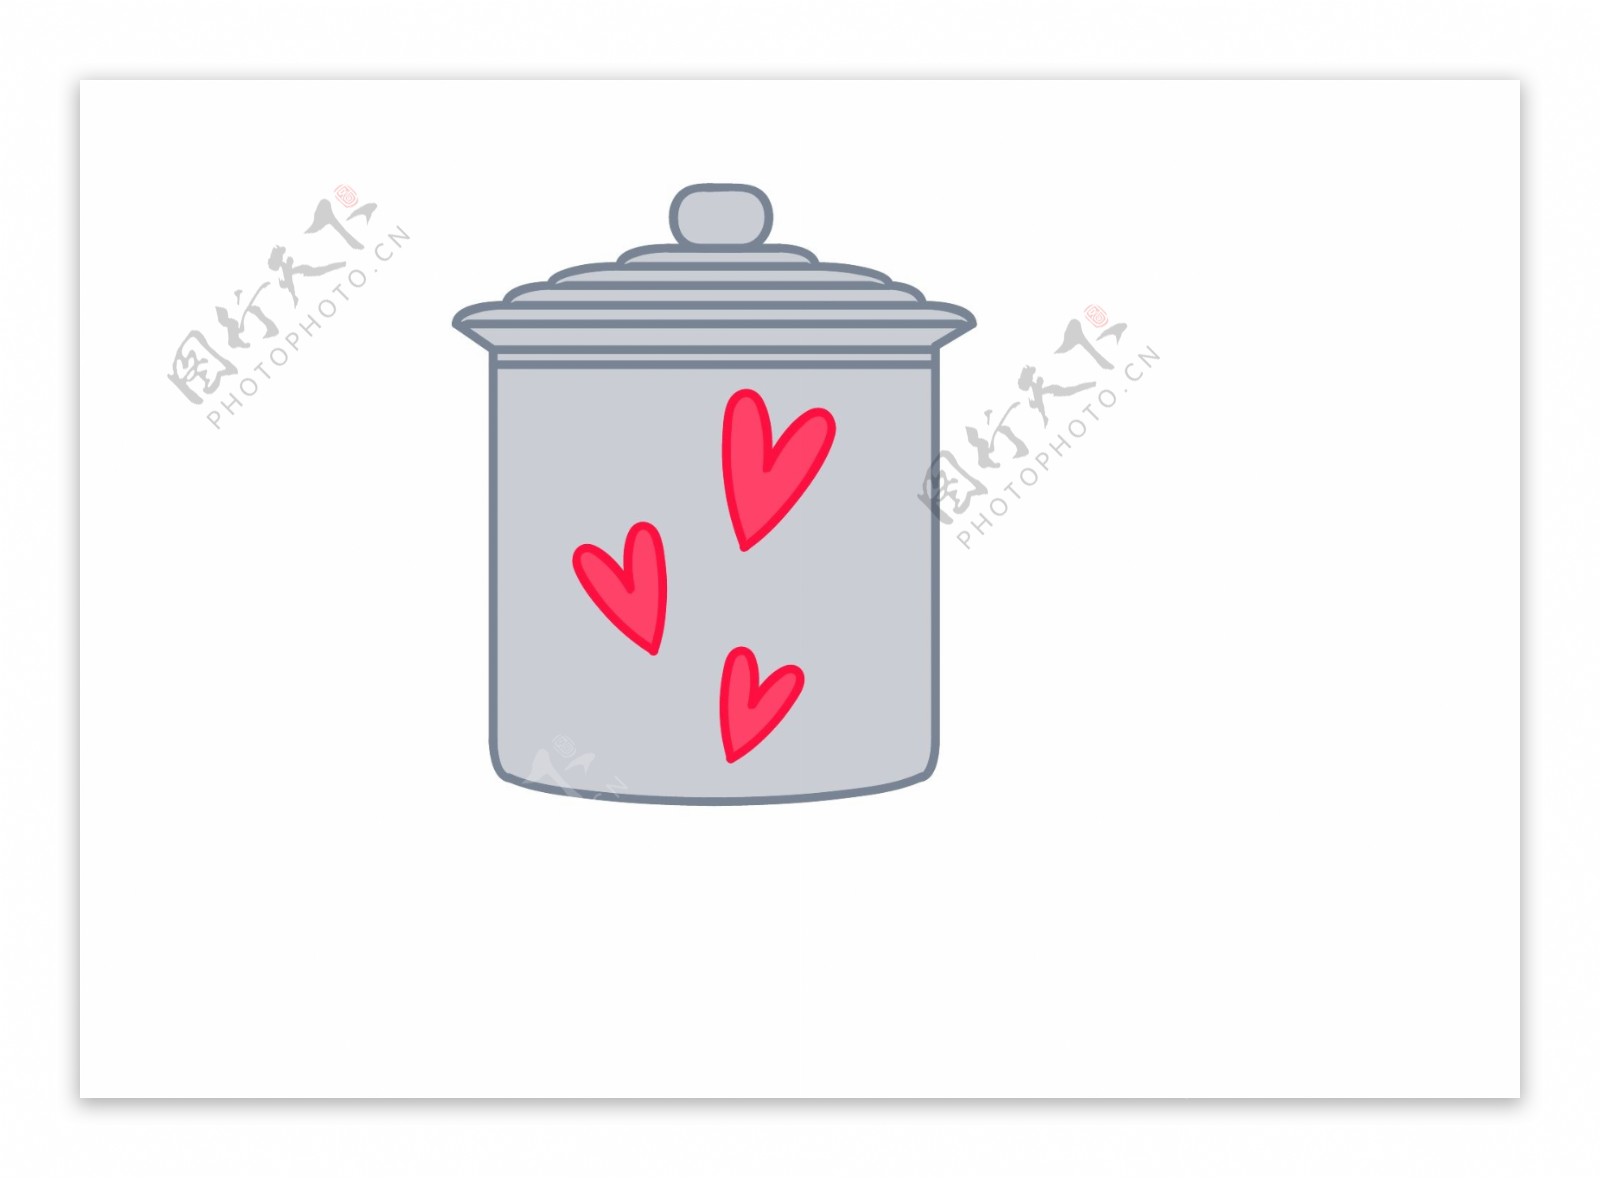 垃圾桶卡通爱心爱情矢量文件素材